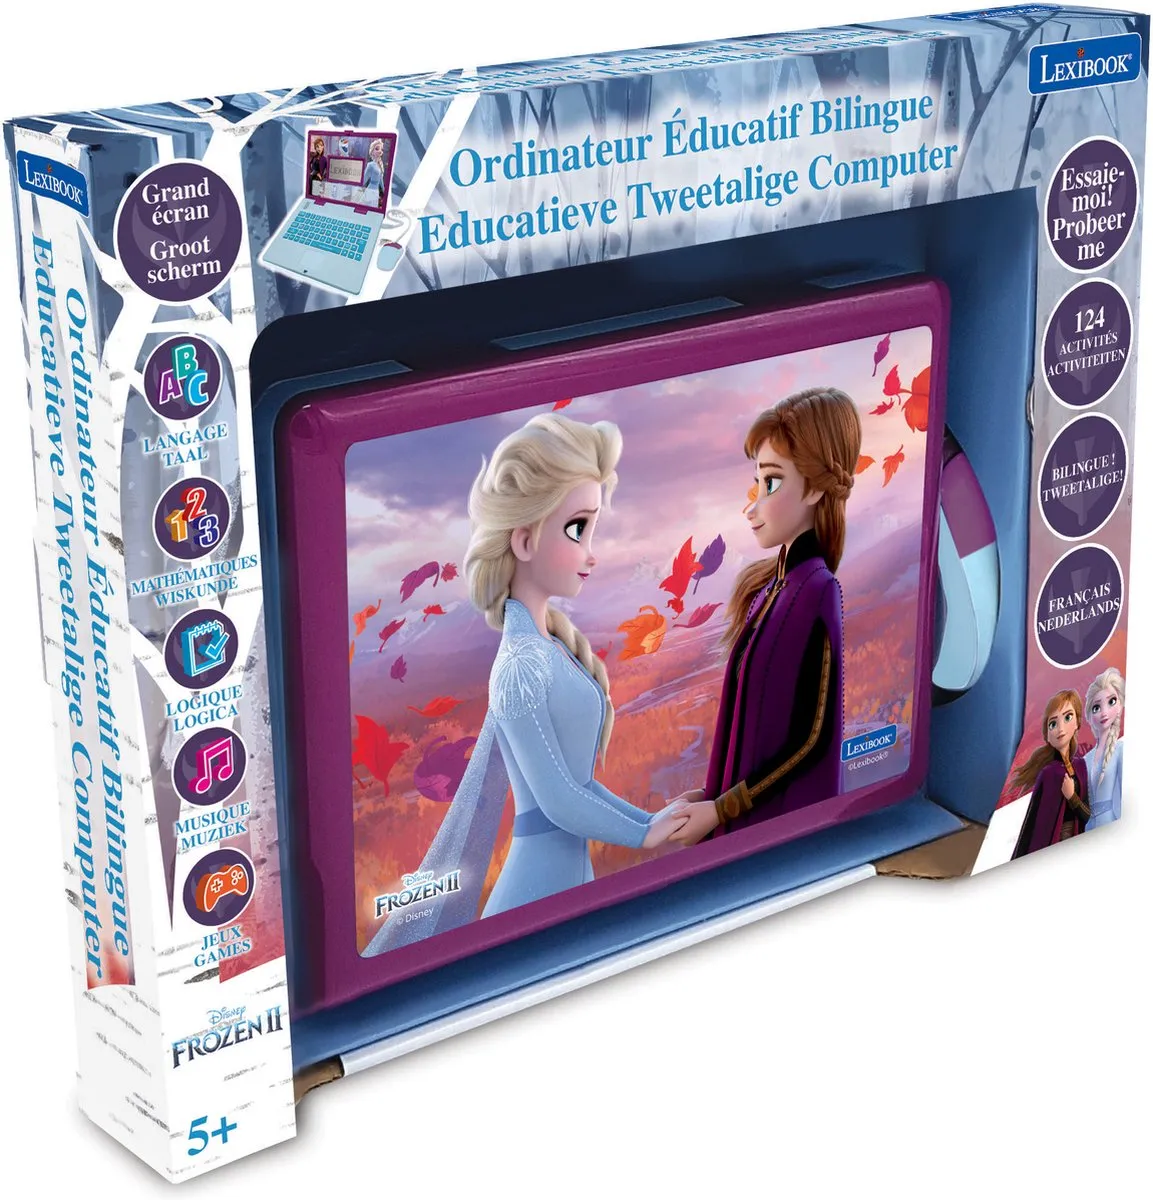 Lexibook Disney Frozen 2 - Educatieve tweetalige computer 124 activiteiten - JC598FZi10 - Frans/Nederlands speelgoed